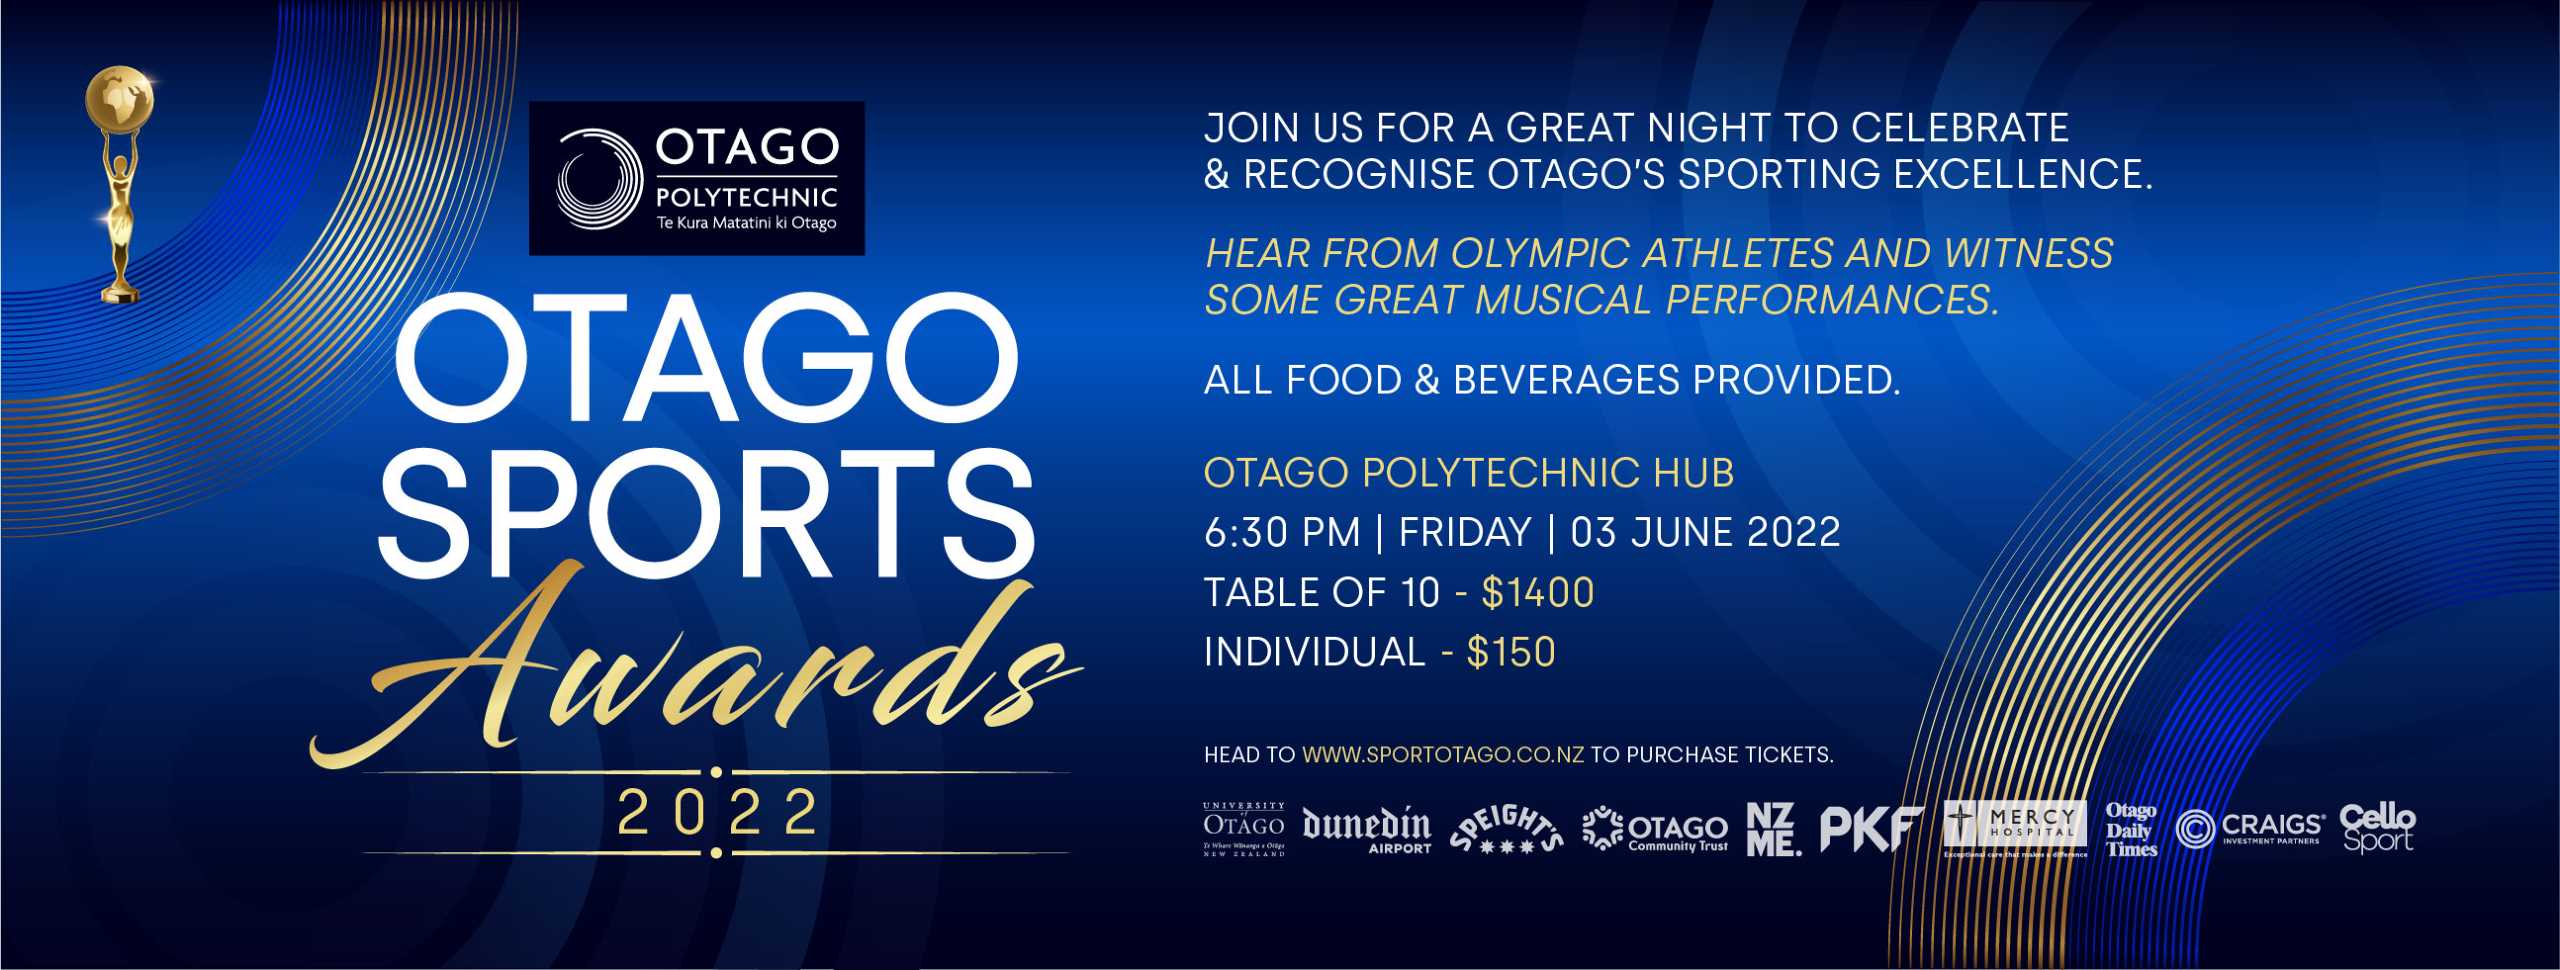 Otago Sports Awards 2022